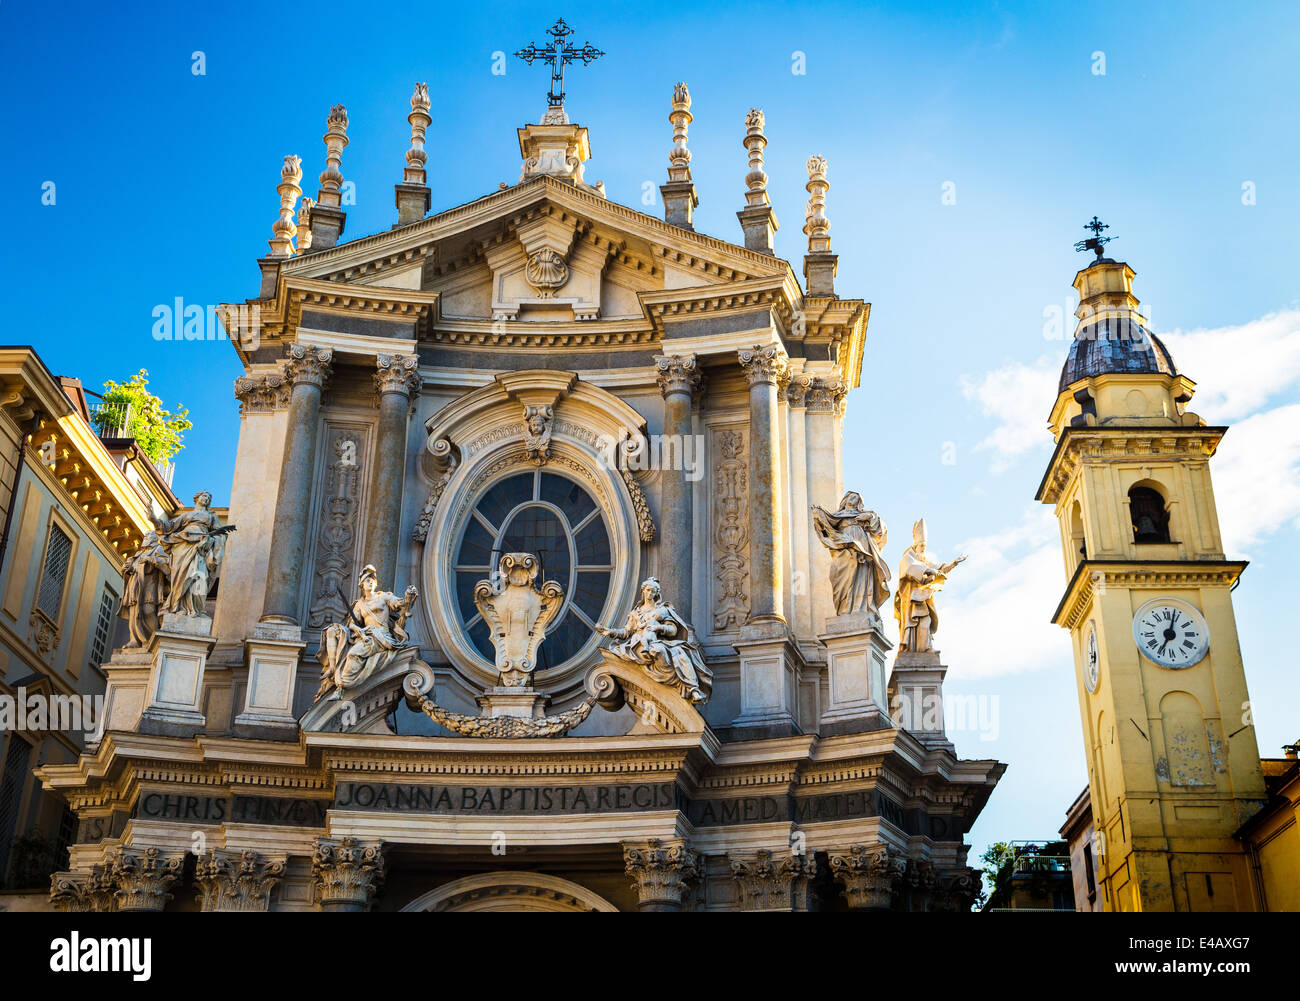 Detail von der Kirche Santa Cristina mit Turm der Kirche San Carlo auf der rechten Seite. Piazza San Carlo, Turin, Italien. Stockfoto